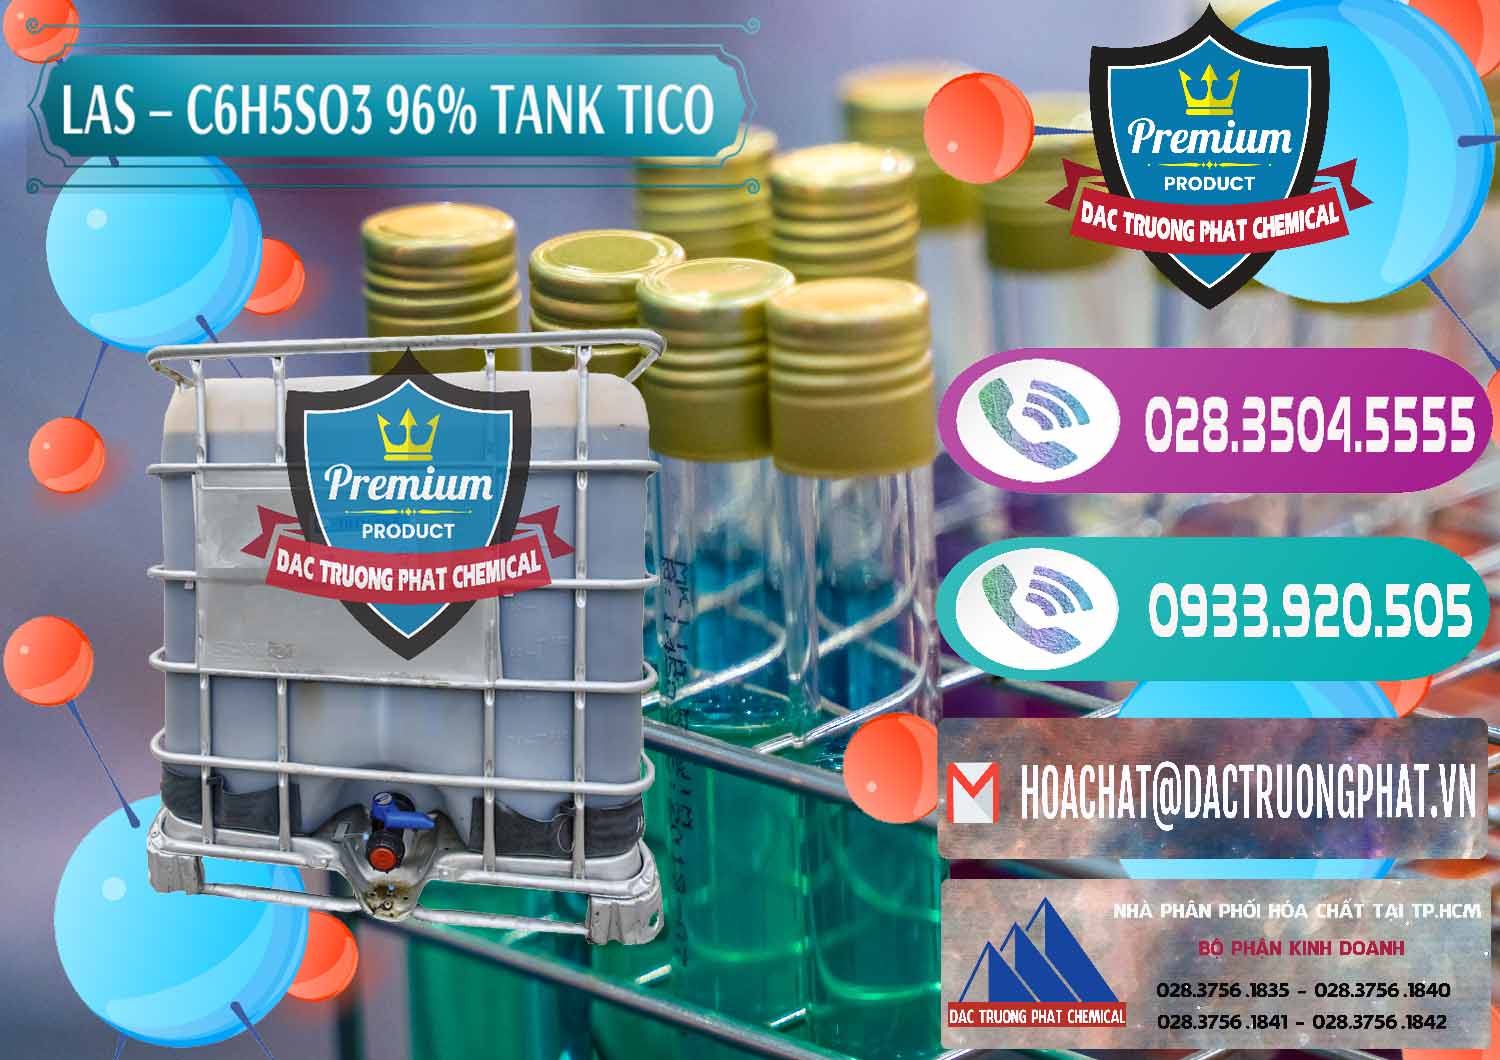 Cty chuyên cung ứng - bán Chất tạo bọt Las P Tico Tank IBC Bồn Việt Nam - 0488 - Nhà phân phối & cung cấp hóa chất tại TP.HCM - hoachatxulynuoc.com